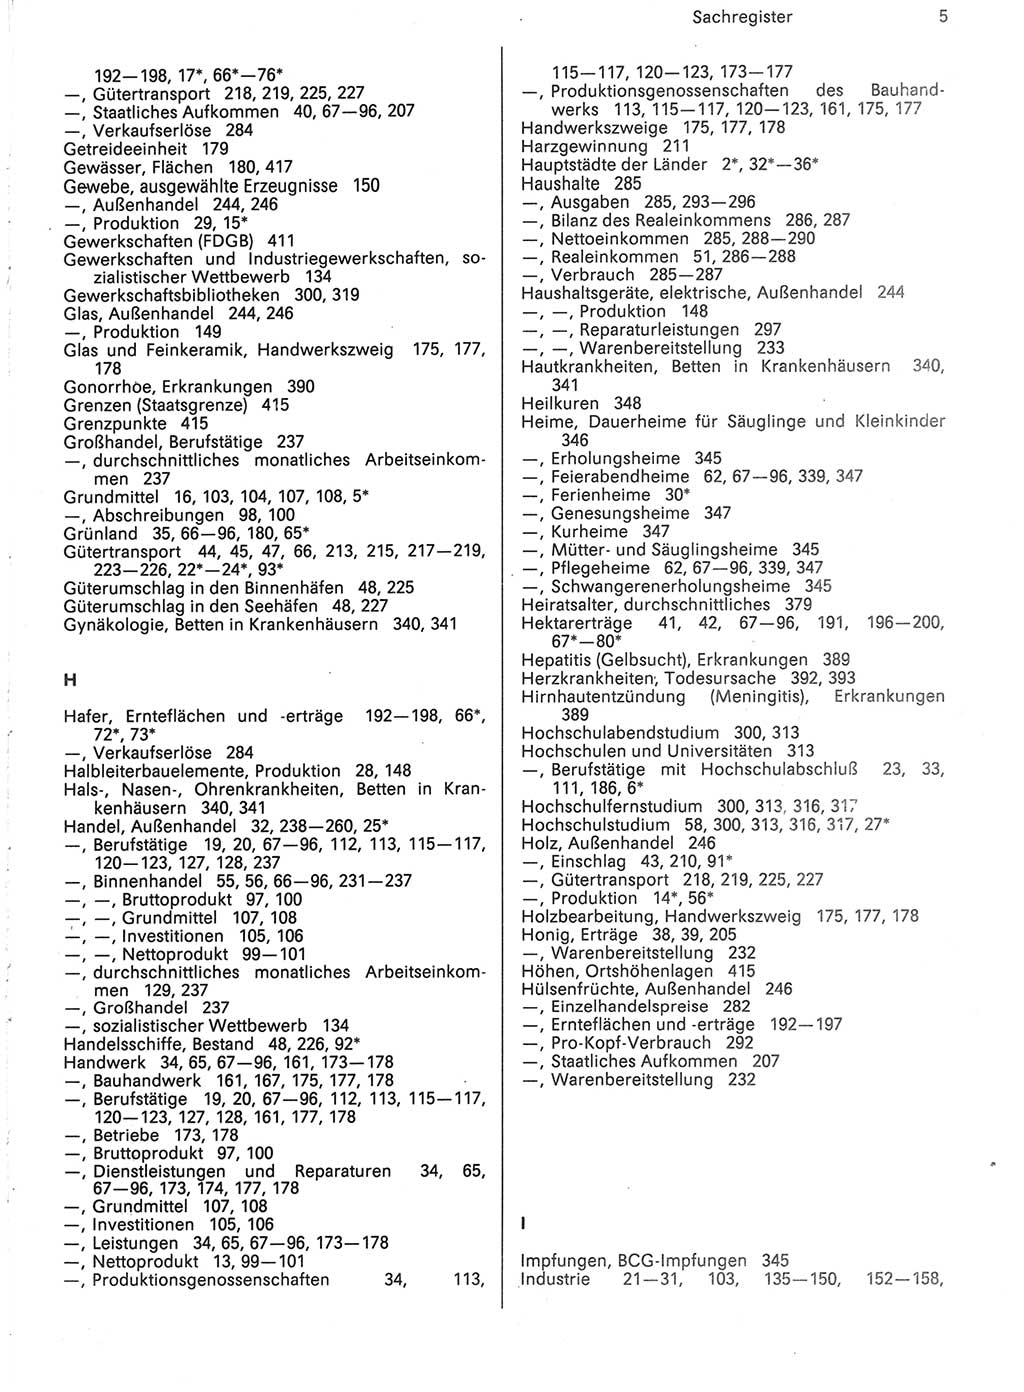 Statistisches Jahrbuch der Deutschen Demokratischen Republik (DDR) 1988, Seite 5 (Stat. Jb. DDR 1988, S. 5)